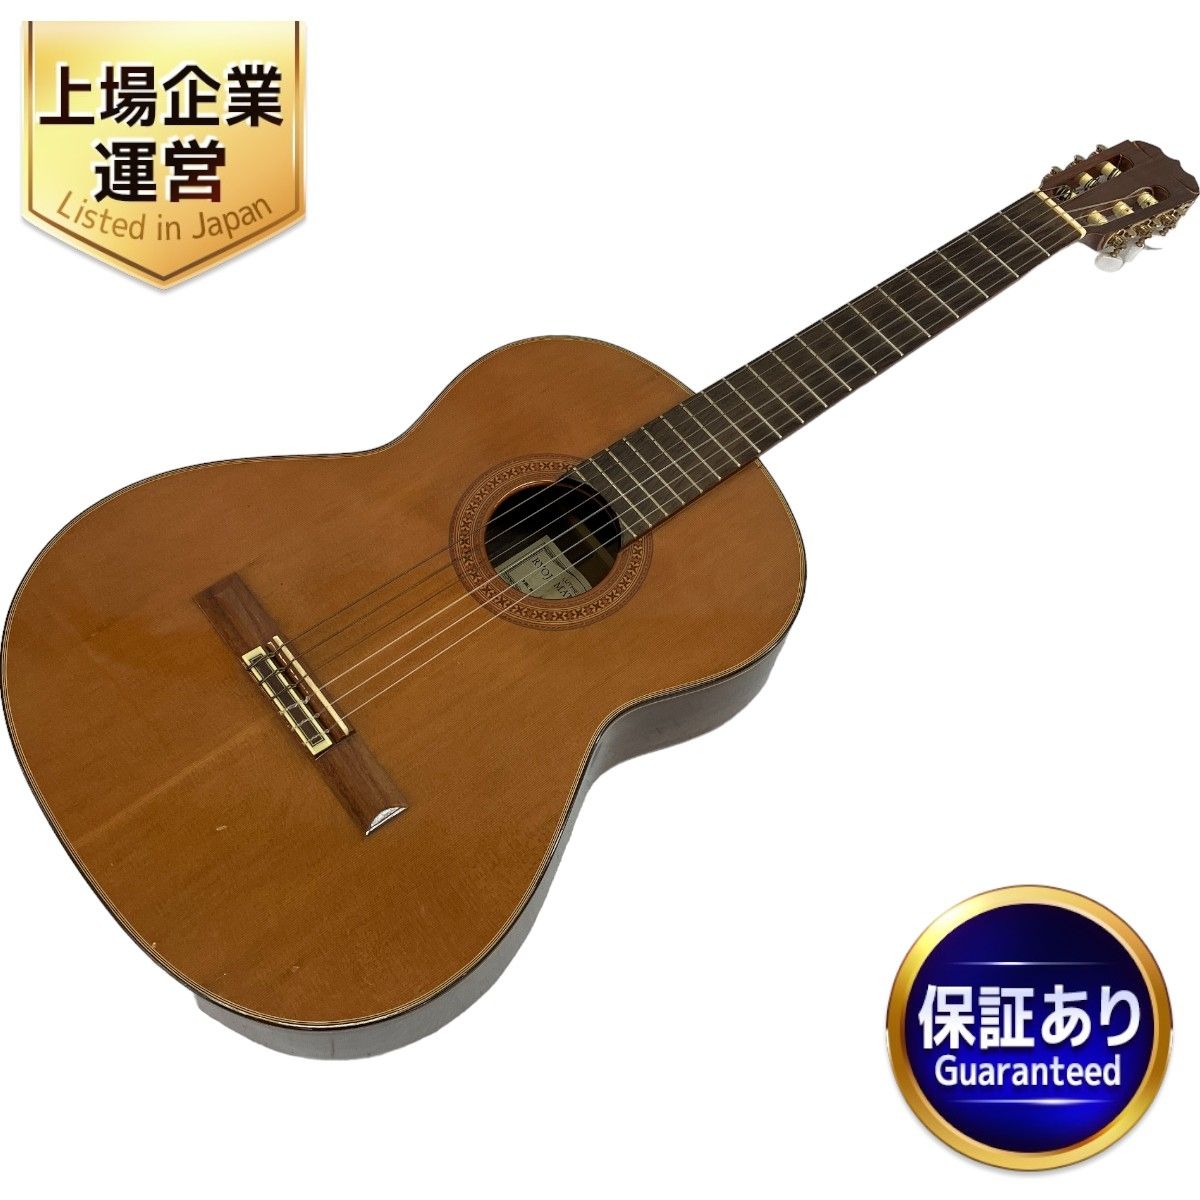 【動作保証】RYOJI MATSUOKA M60 クラシックギター 弦楽器 アコースティックギター セミハードケース付き 松岡良治 中古  C9019265